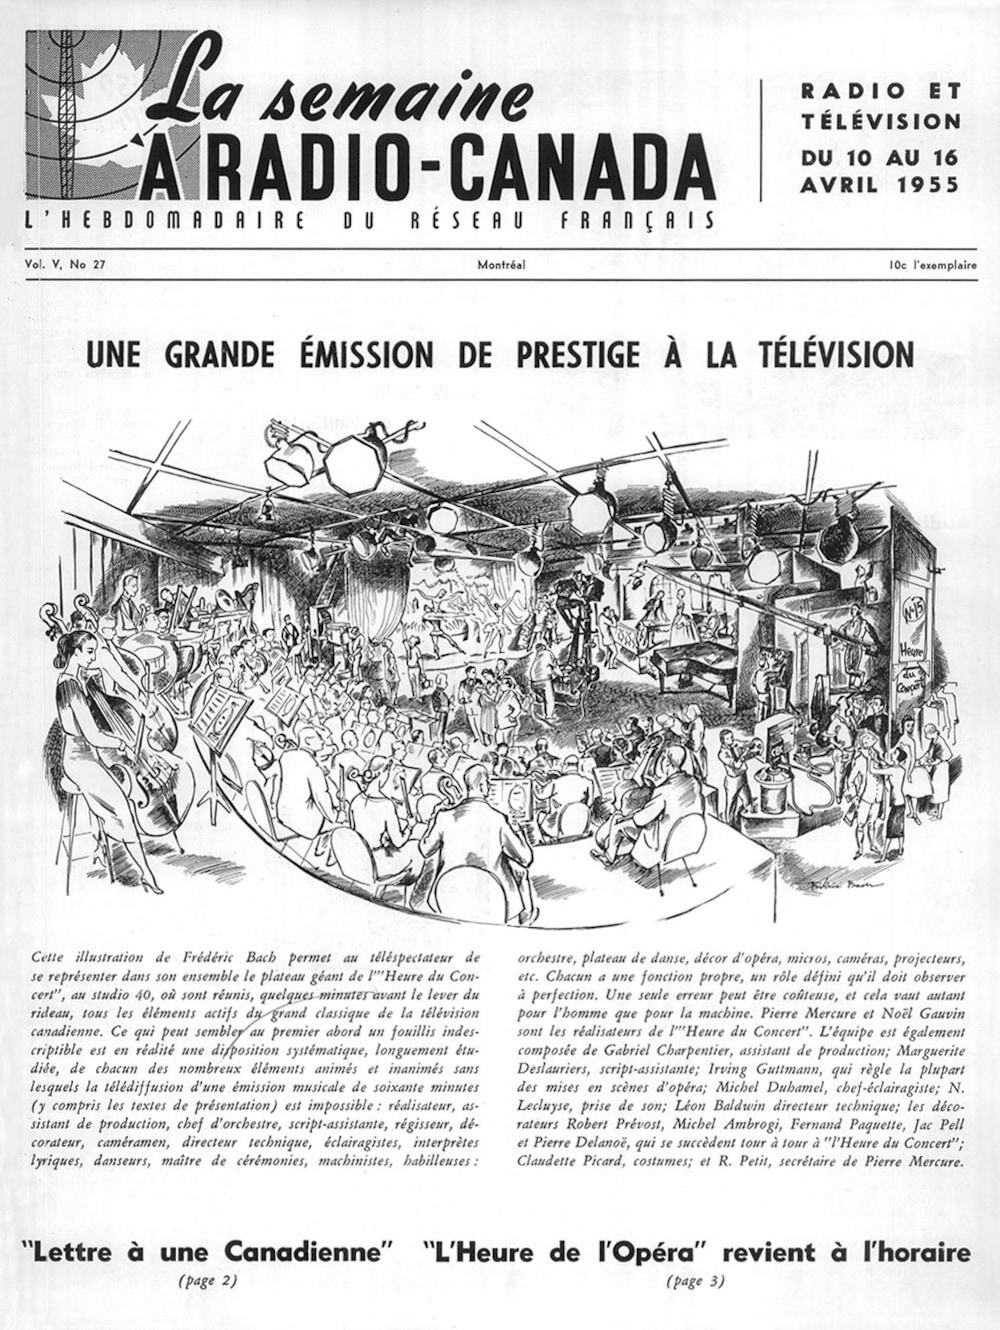 Page couverture de la revue « La semaine à Radio-Canada » titrée « Une grande émission de prestige à la télévision » avec une illustration du plateau de l'émission « L'heure du concert » signée Frédéric Back.